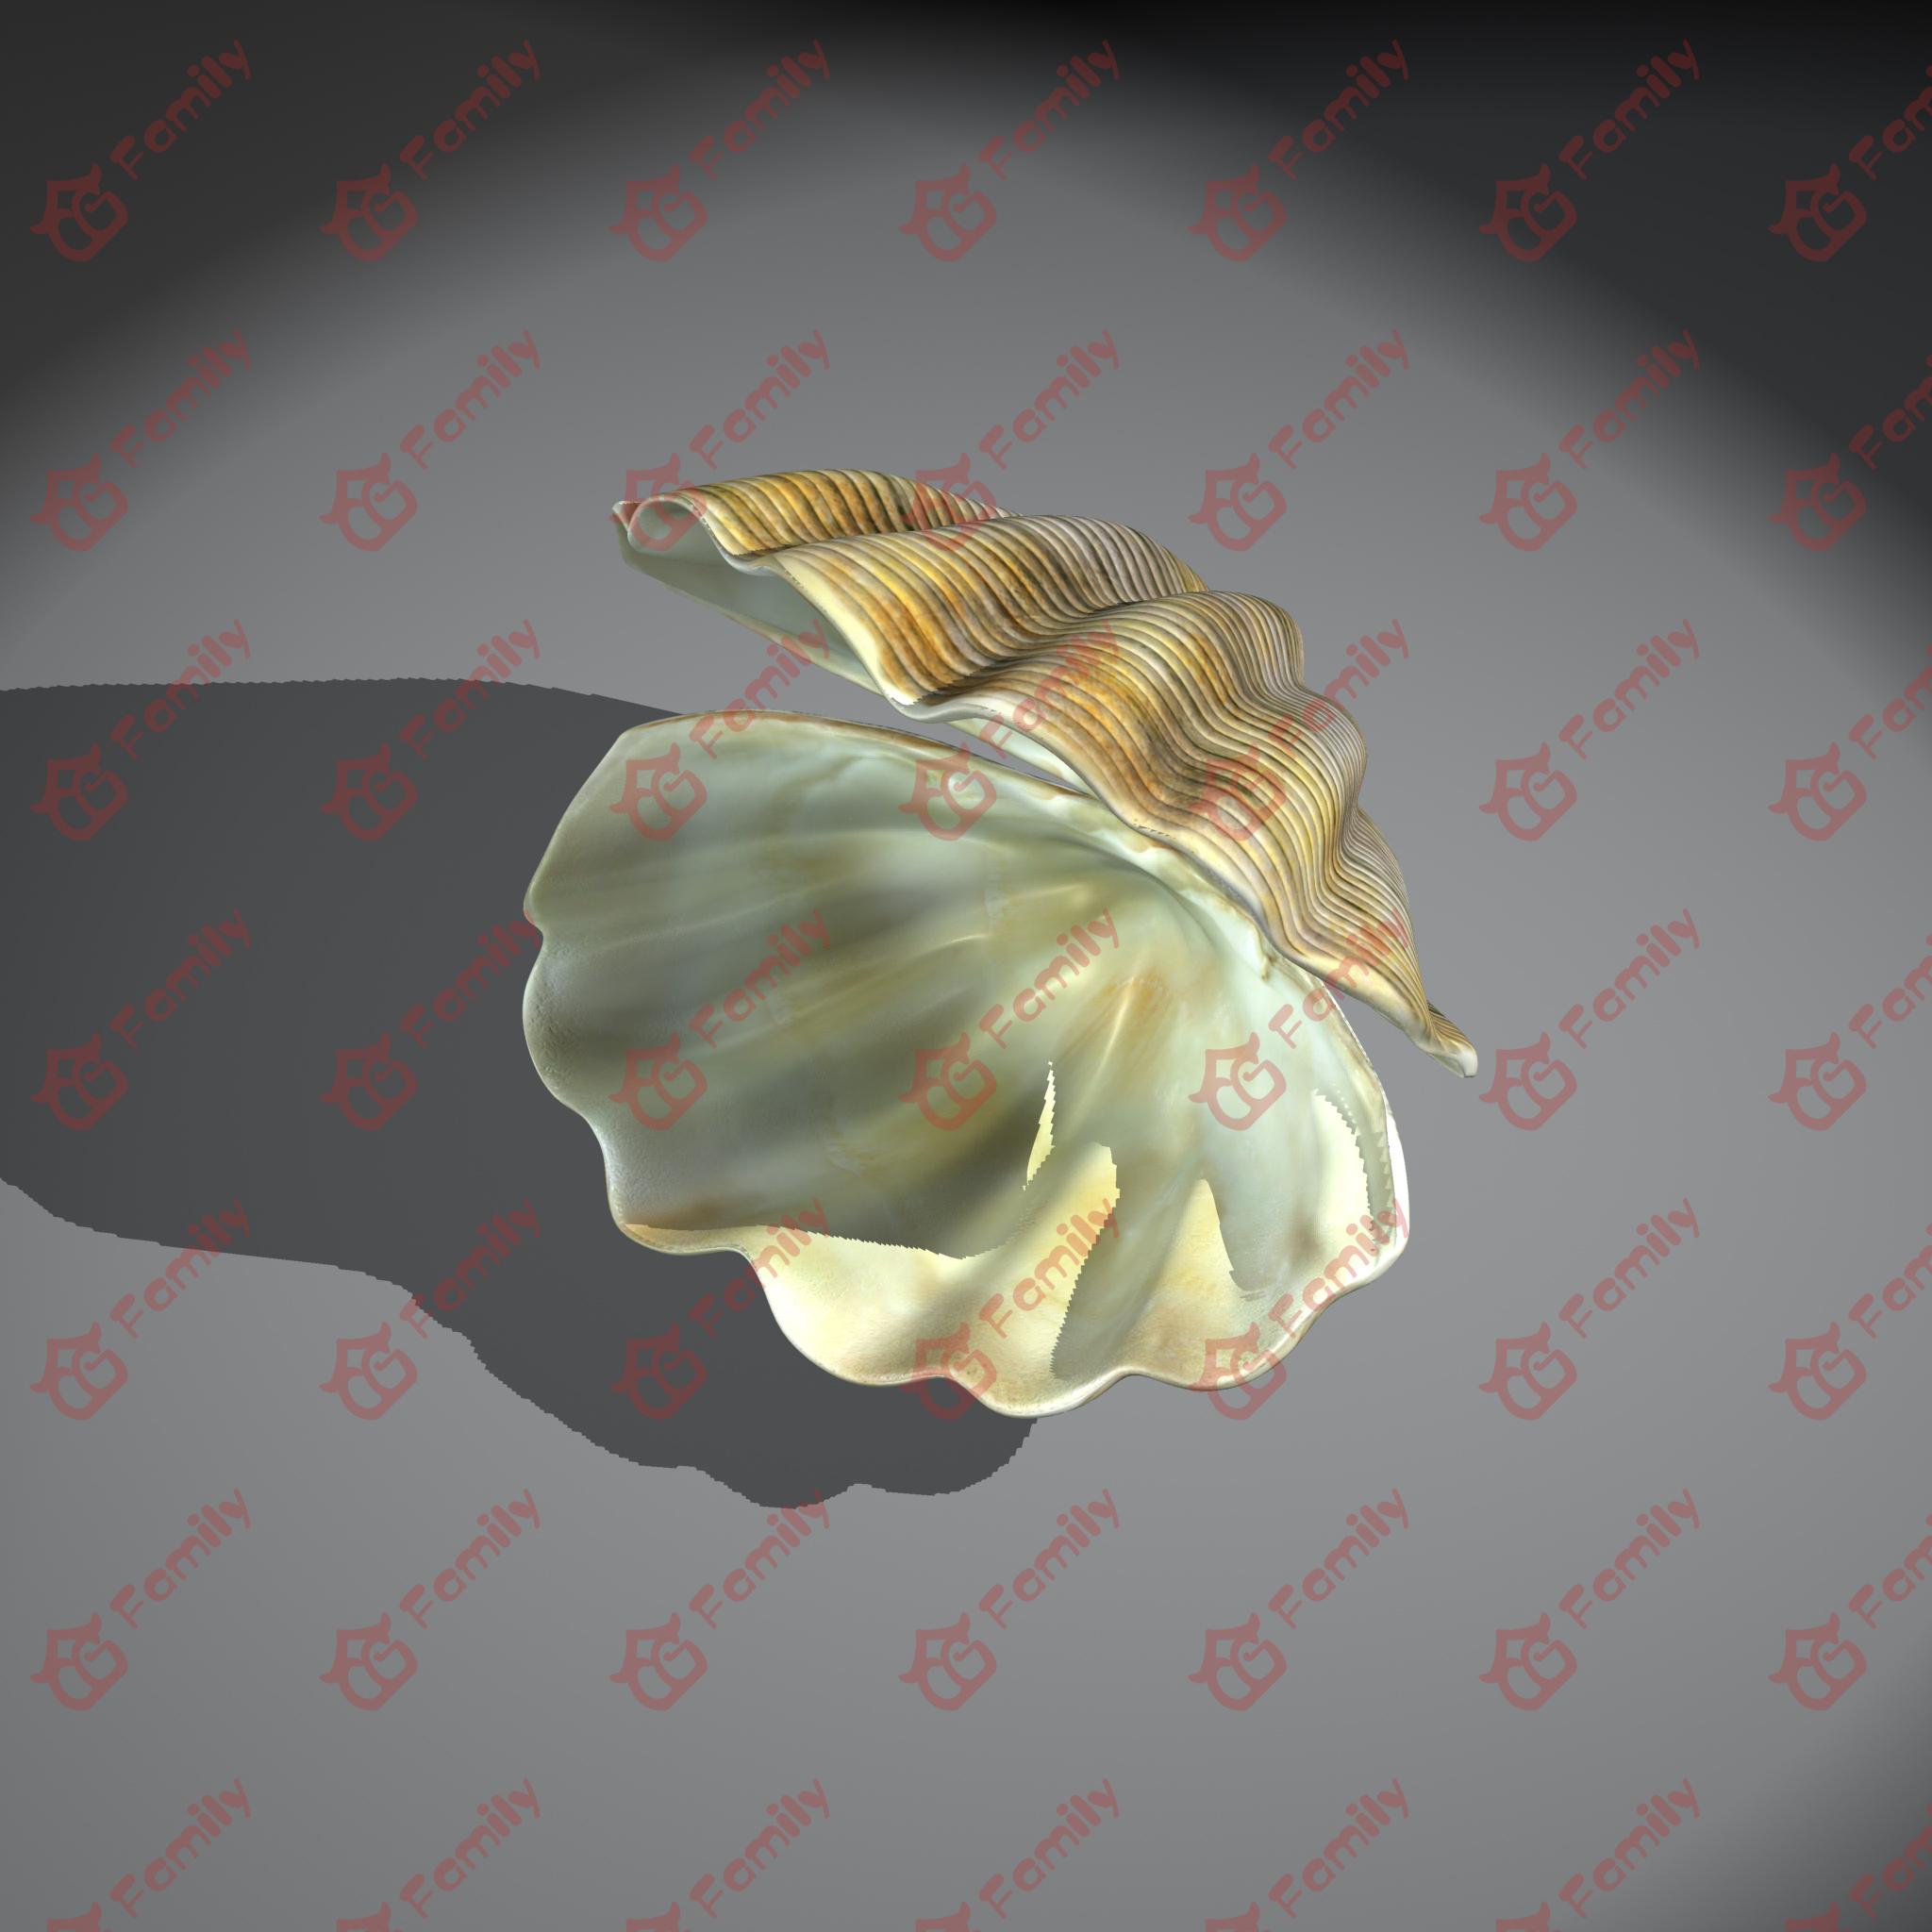 贝壳海贝彩贝海底贝壳贝类蚌海蚌五彩贝壳扇贝珍珠贝壳海蚌蛤蚌珍珠母